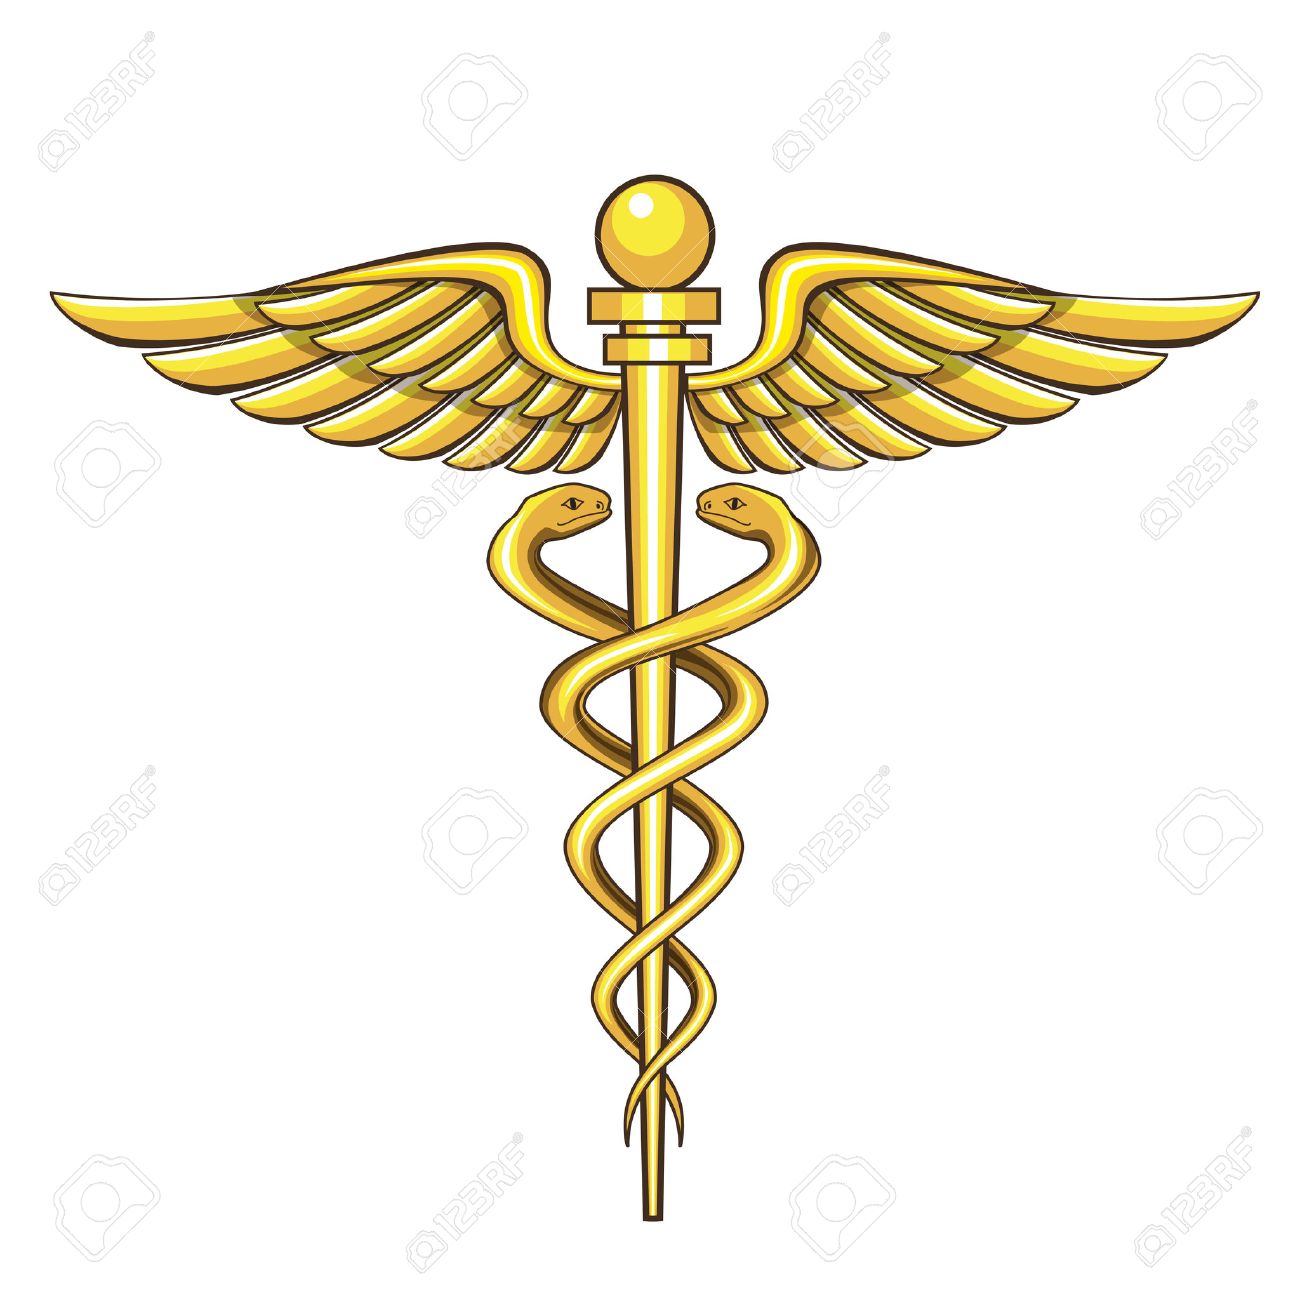 Caduceus Medical Symbol Free Download Clip Art.